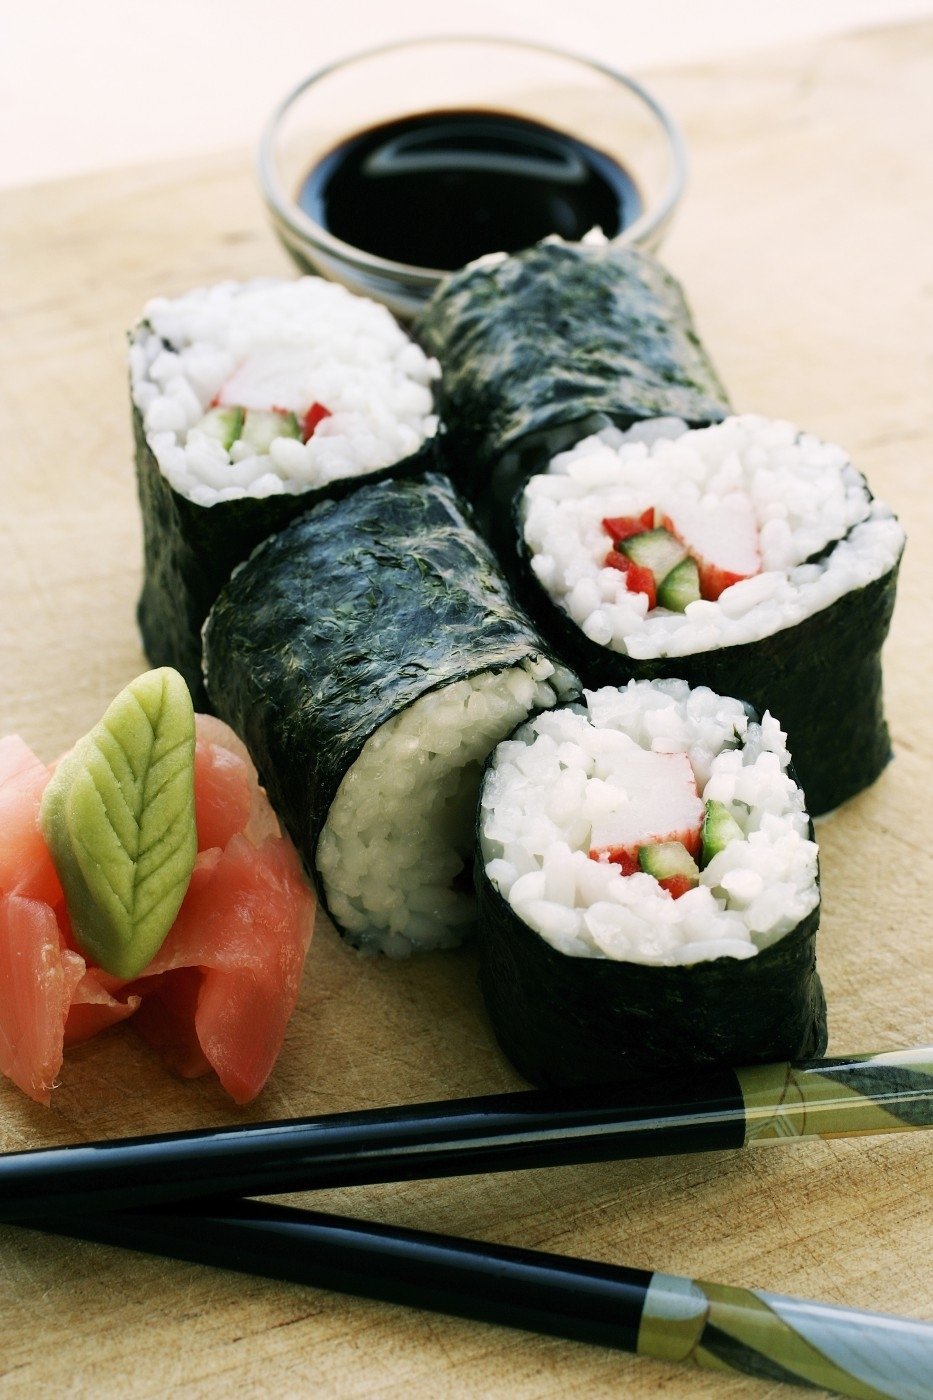 Poslanecká sleva na sushi 25 % - to měl Okamura svým kolegům nabízet.